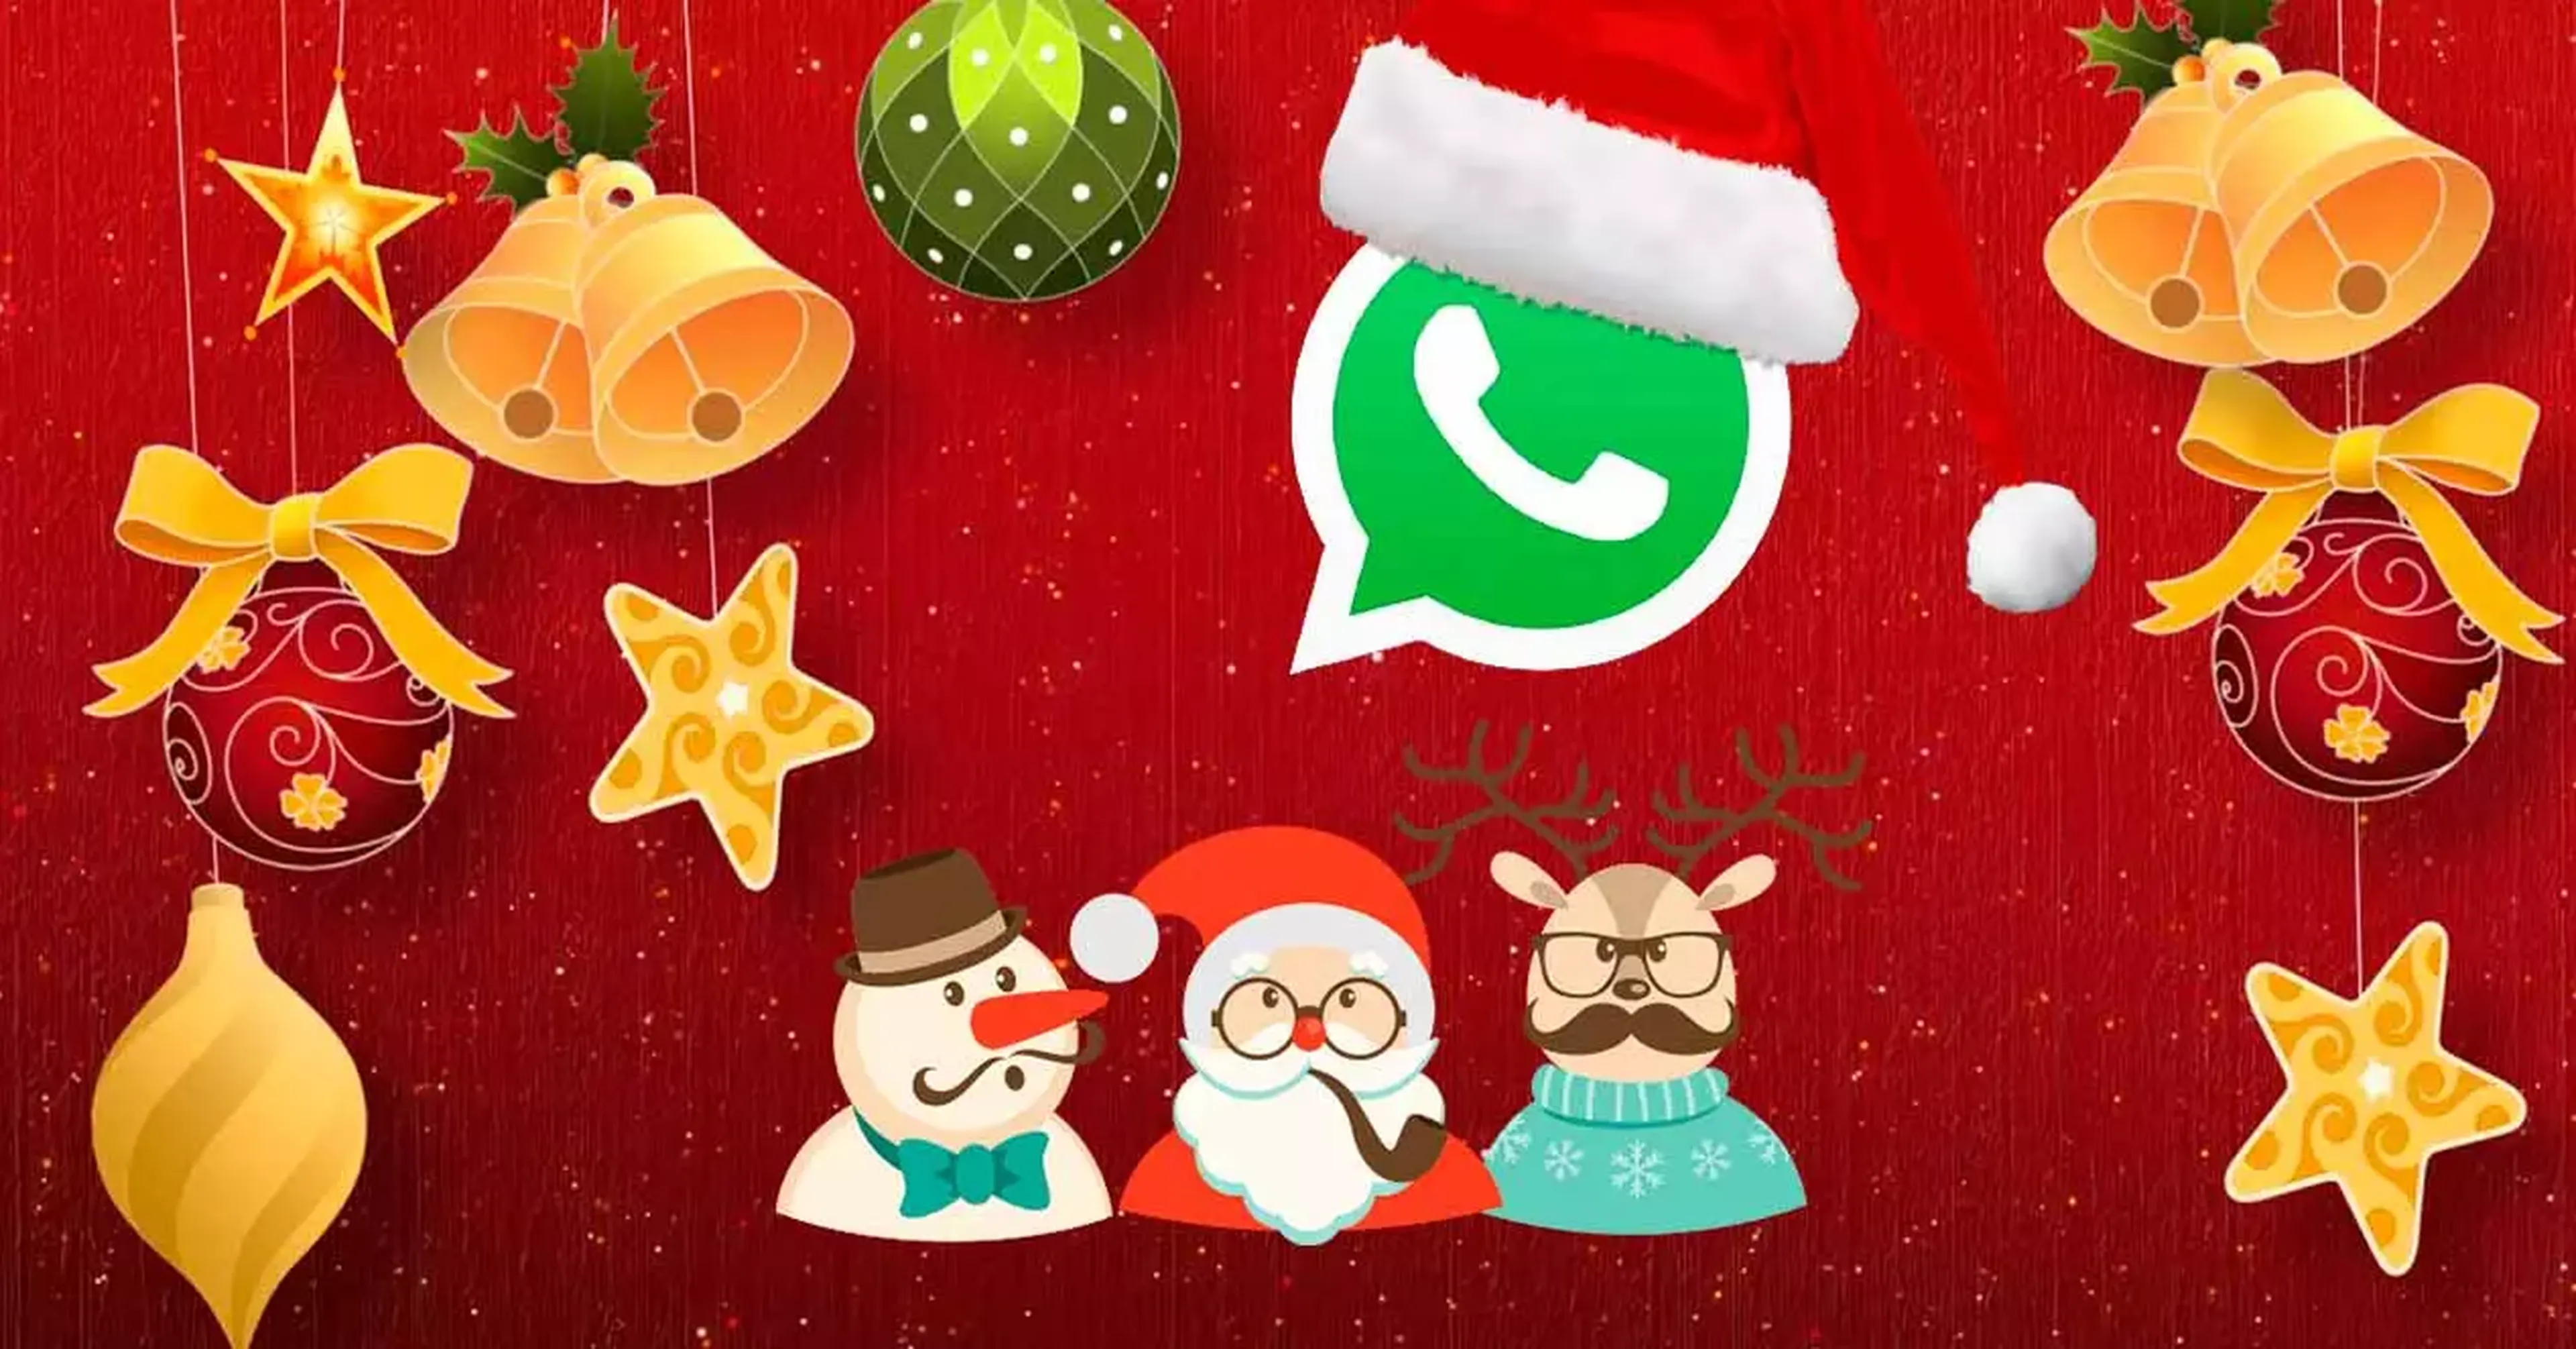 Los mejores GIFs para felicitar la Nochebuena y Navidad por WhatsApp |  Computer Hoy